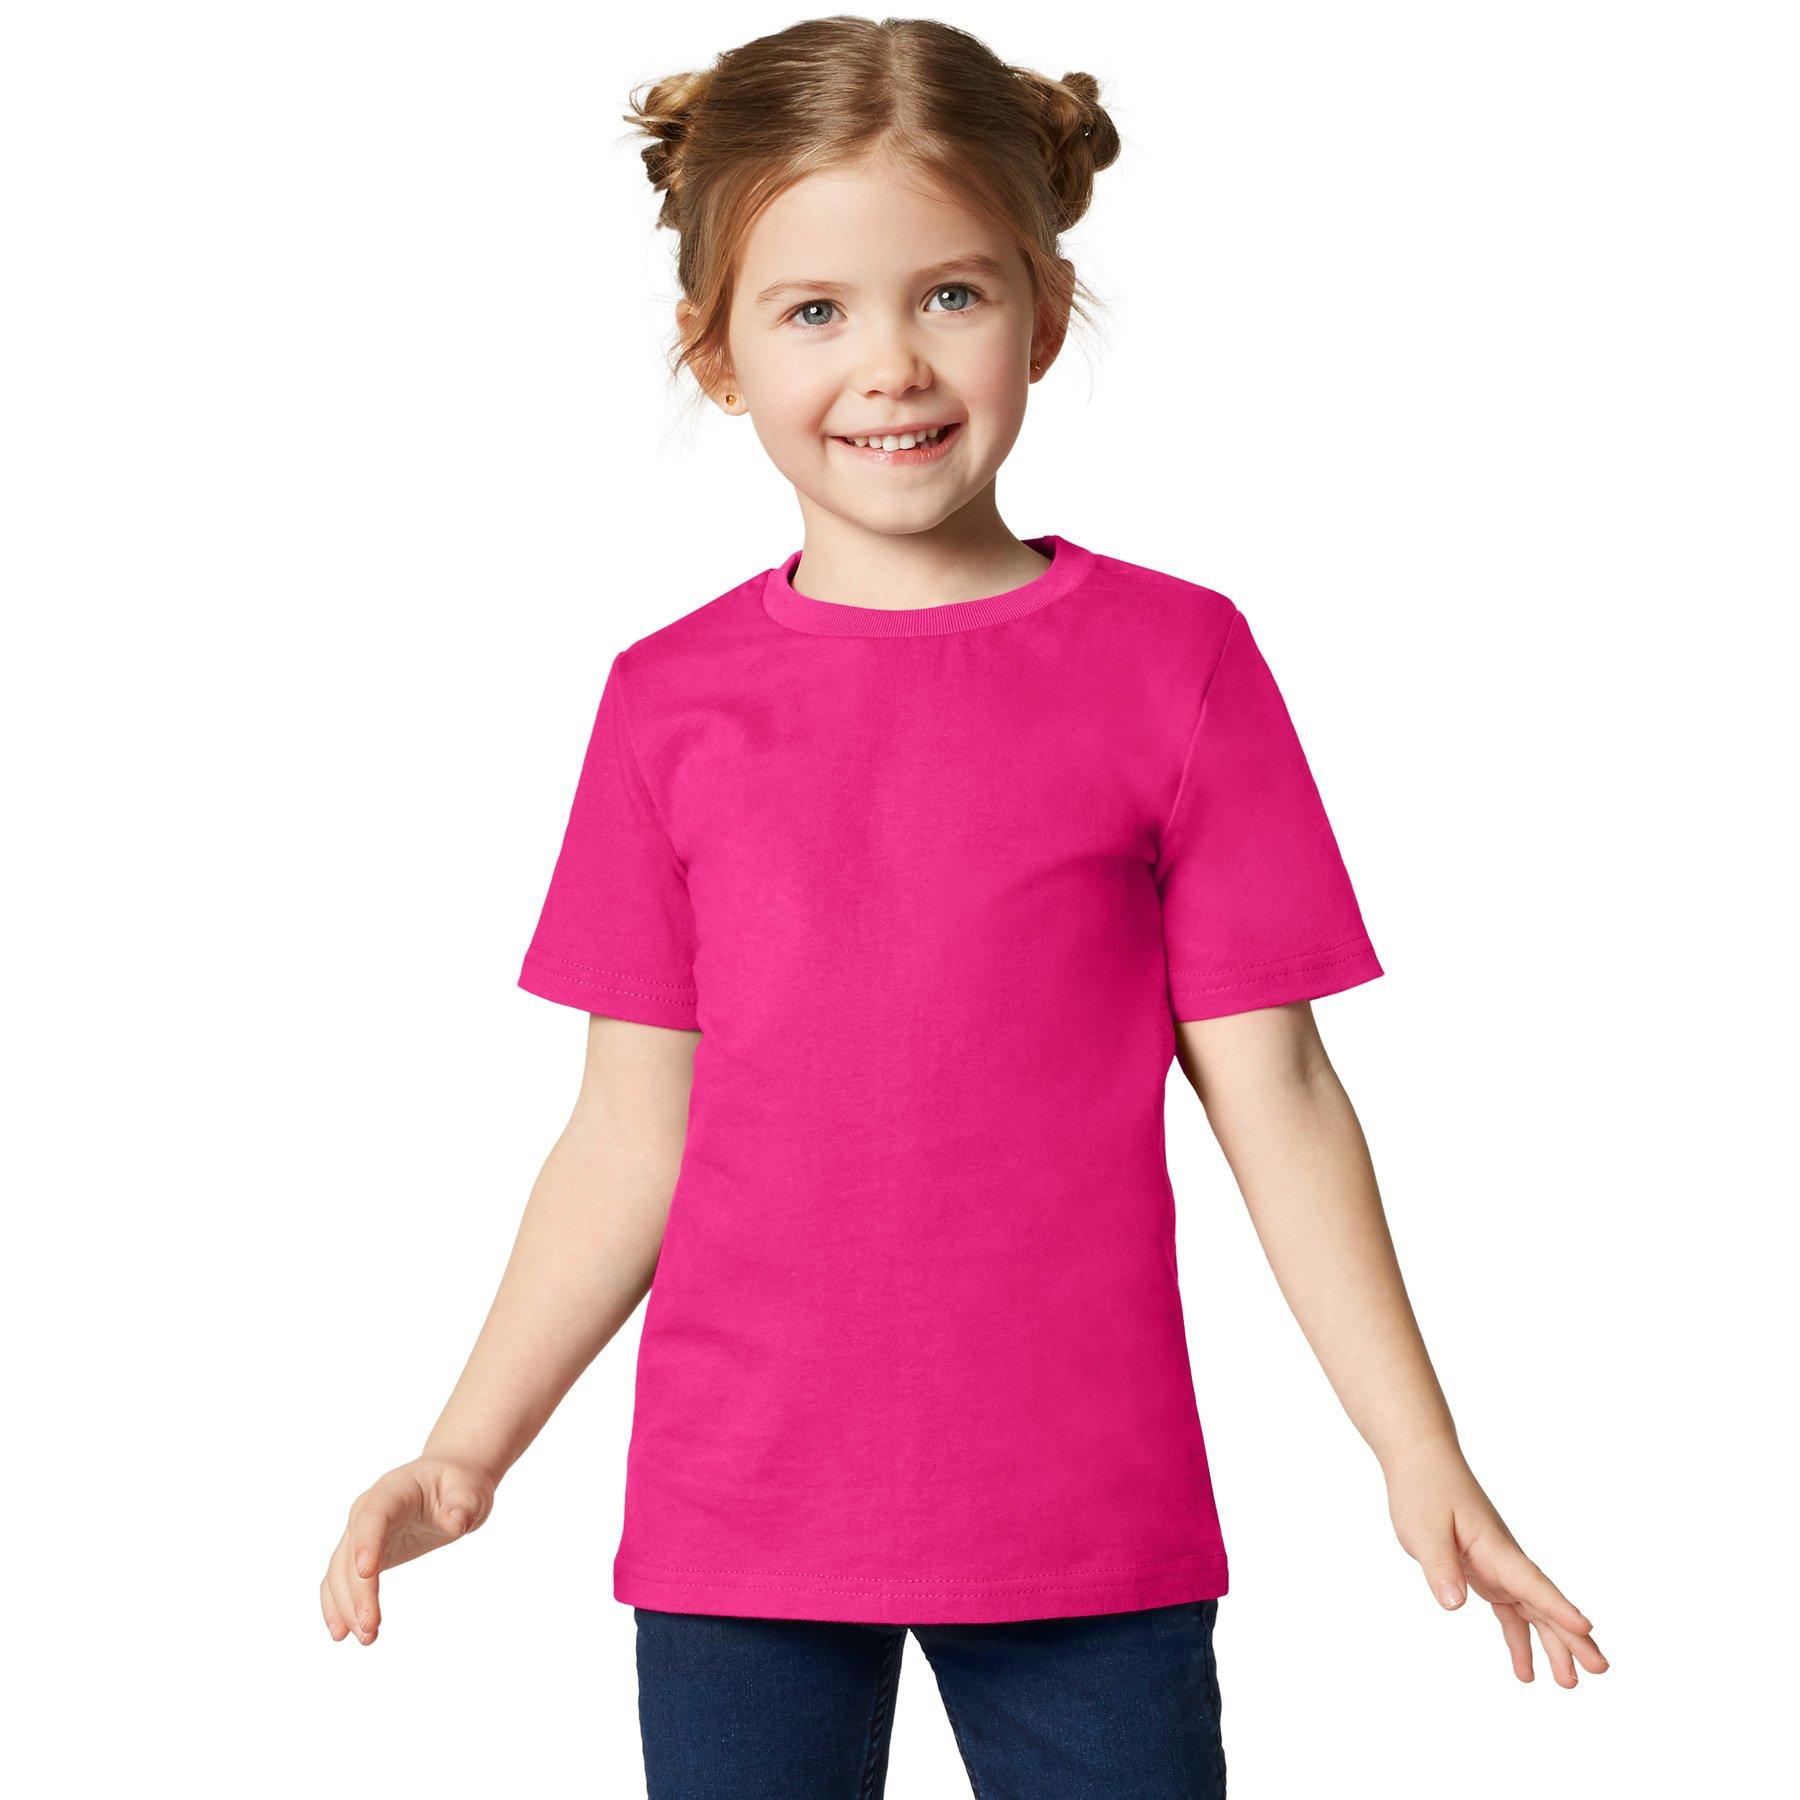 T-shirt Kinder Jungen Pink 128 von Tectake